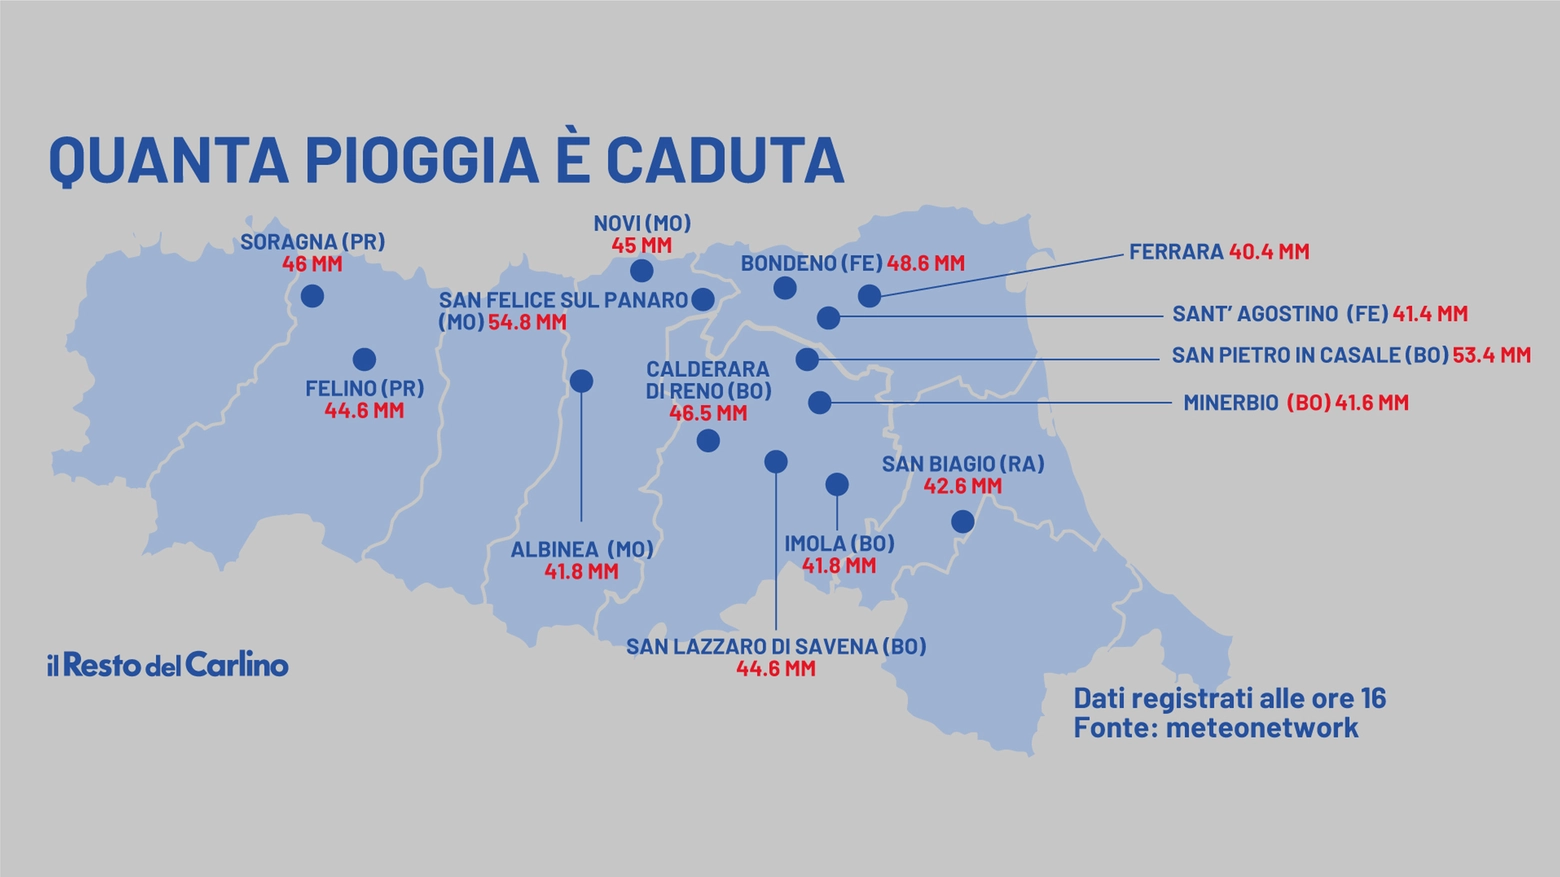 Le zone dell'Emilia Romagna più colpite dalla pioggia